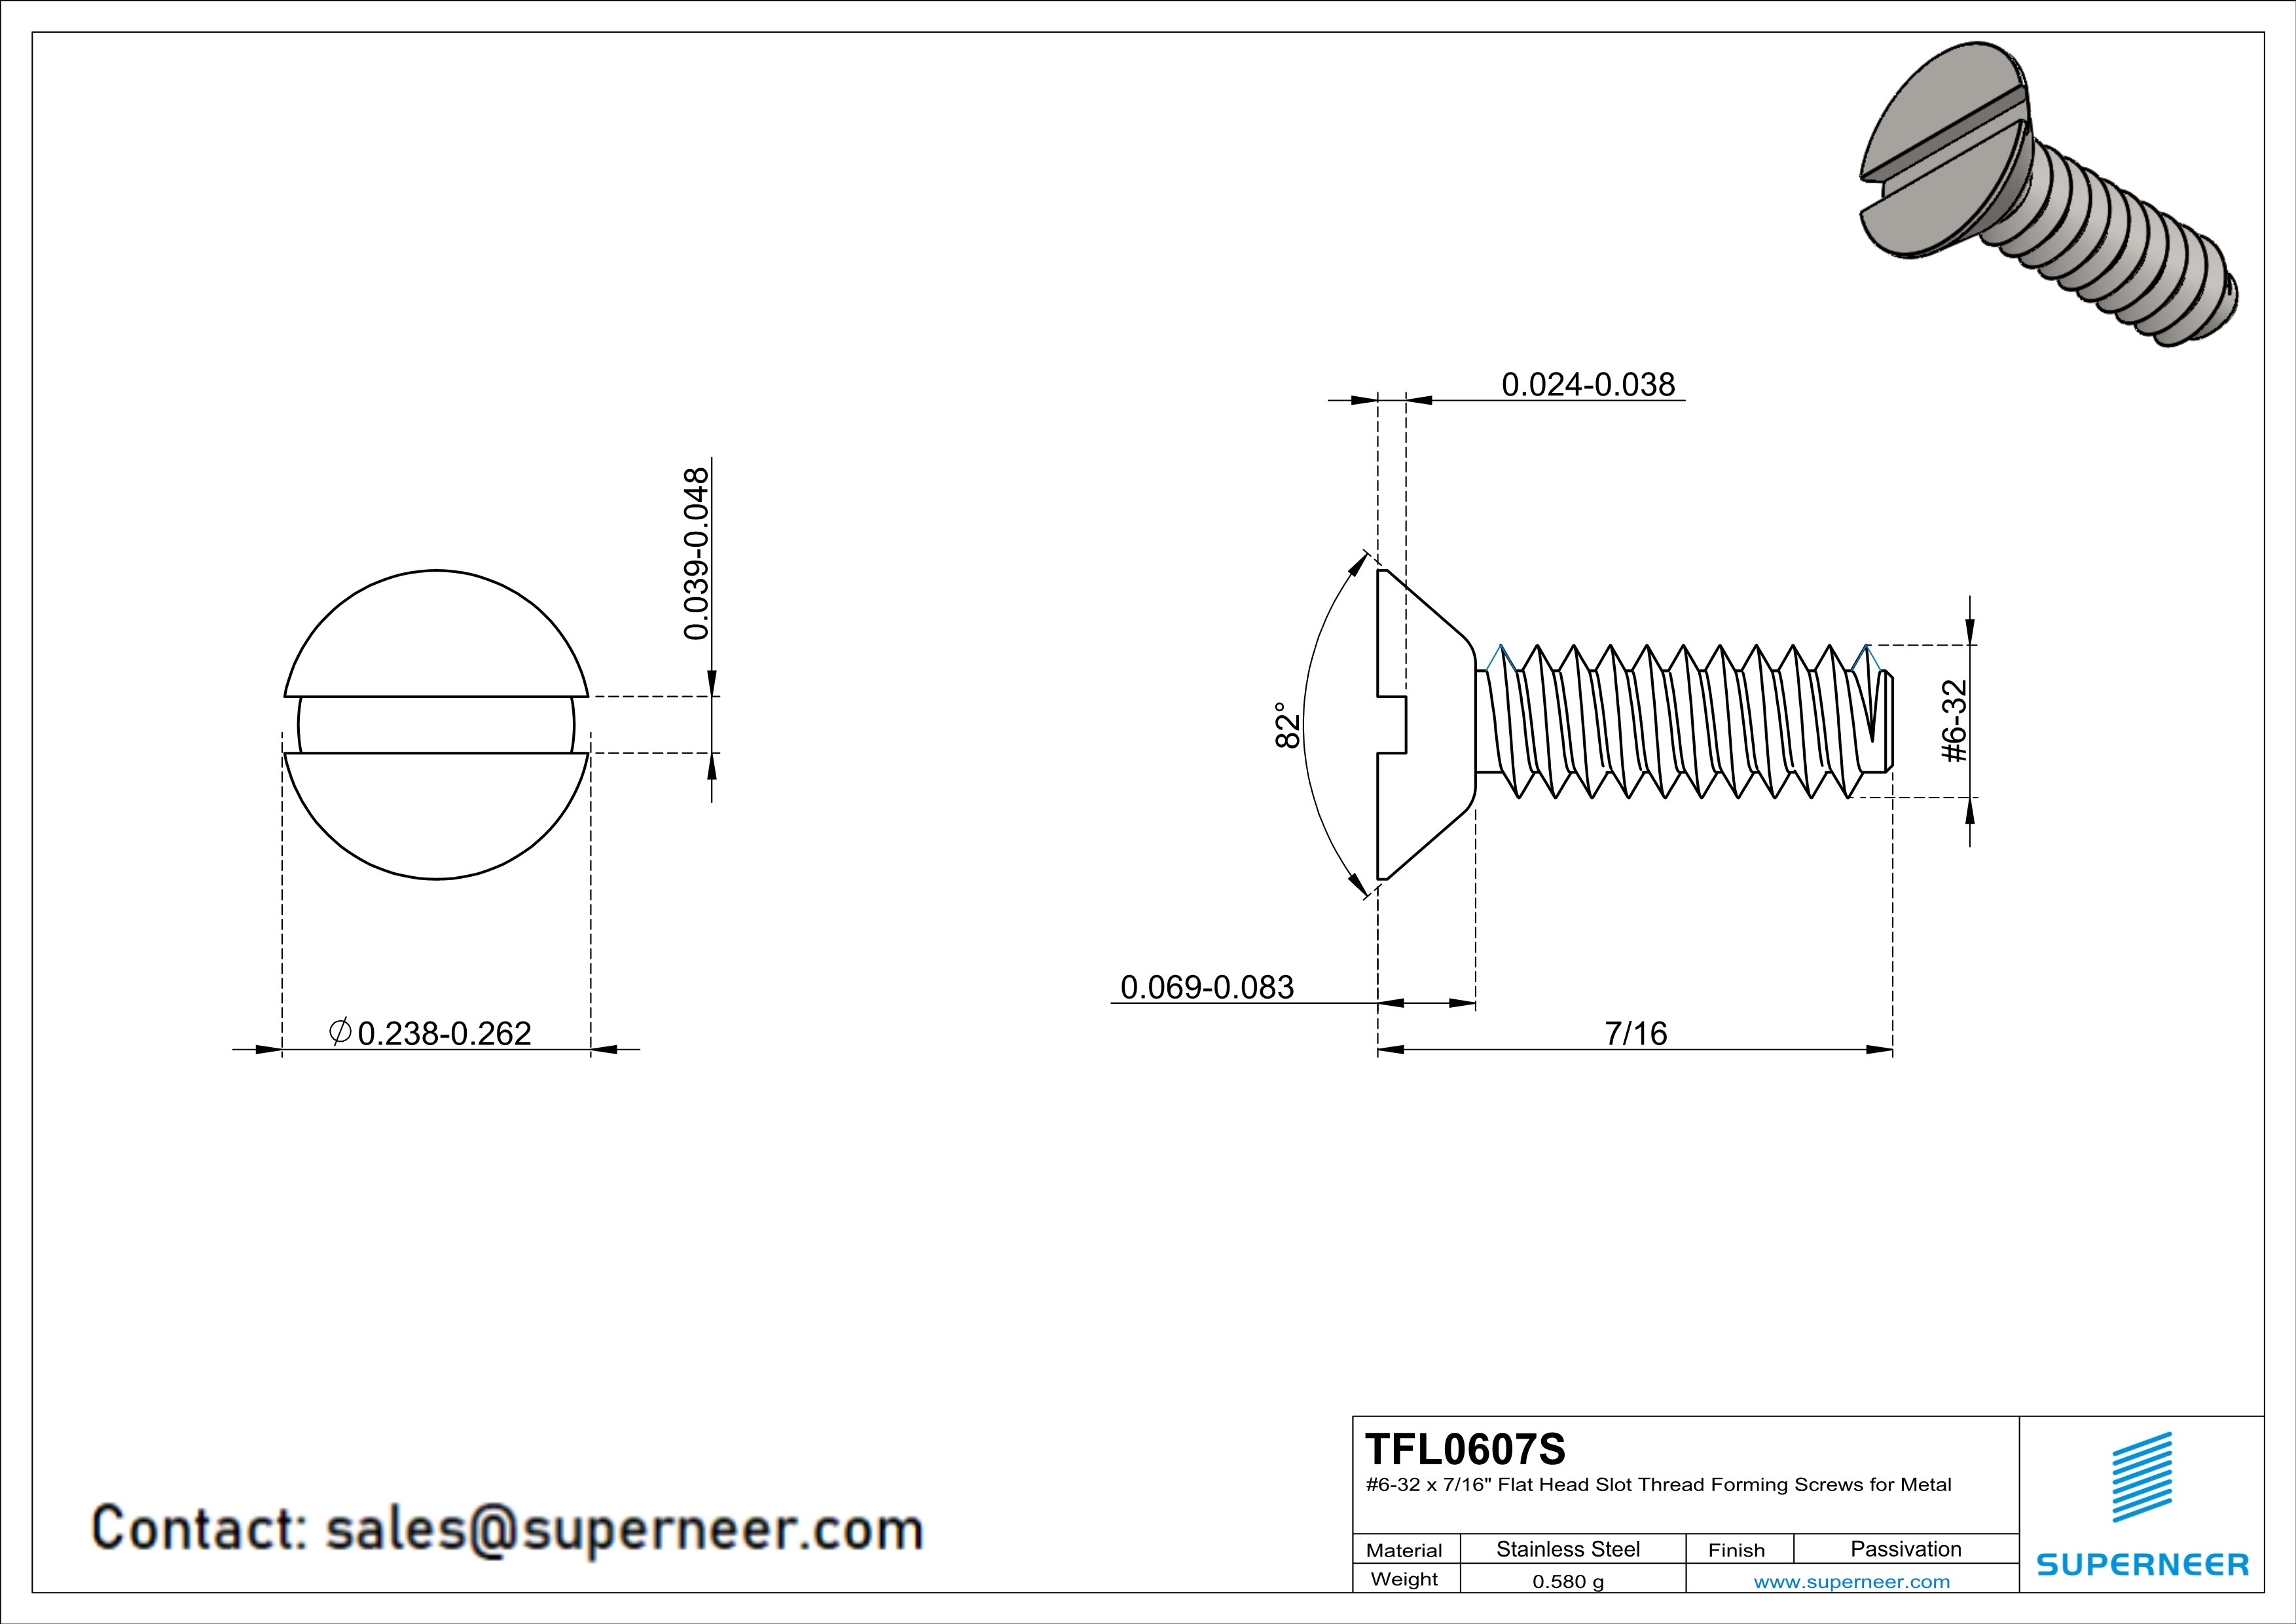 6-32 × 7/16 Flat Head Slot Thread Forming  Screws for Metal  SUS304 Stainless Steel Inox